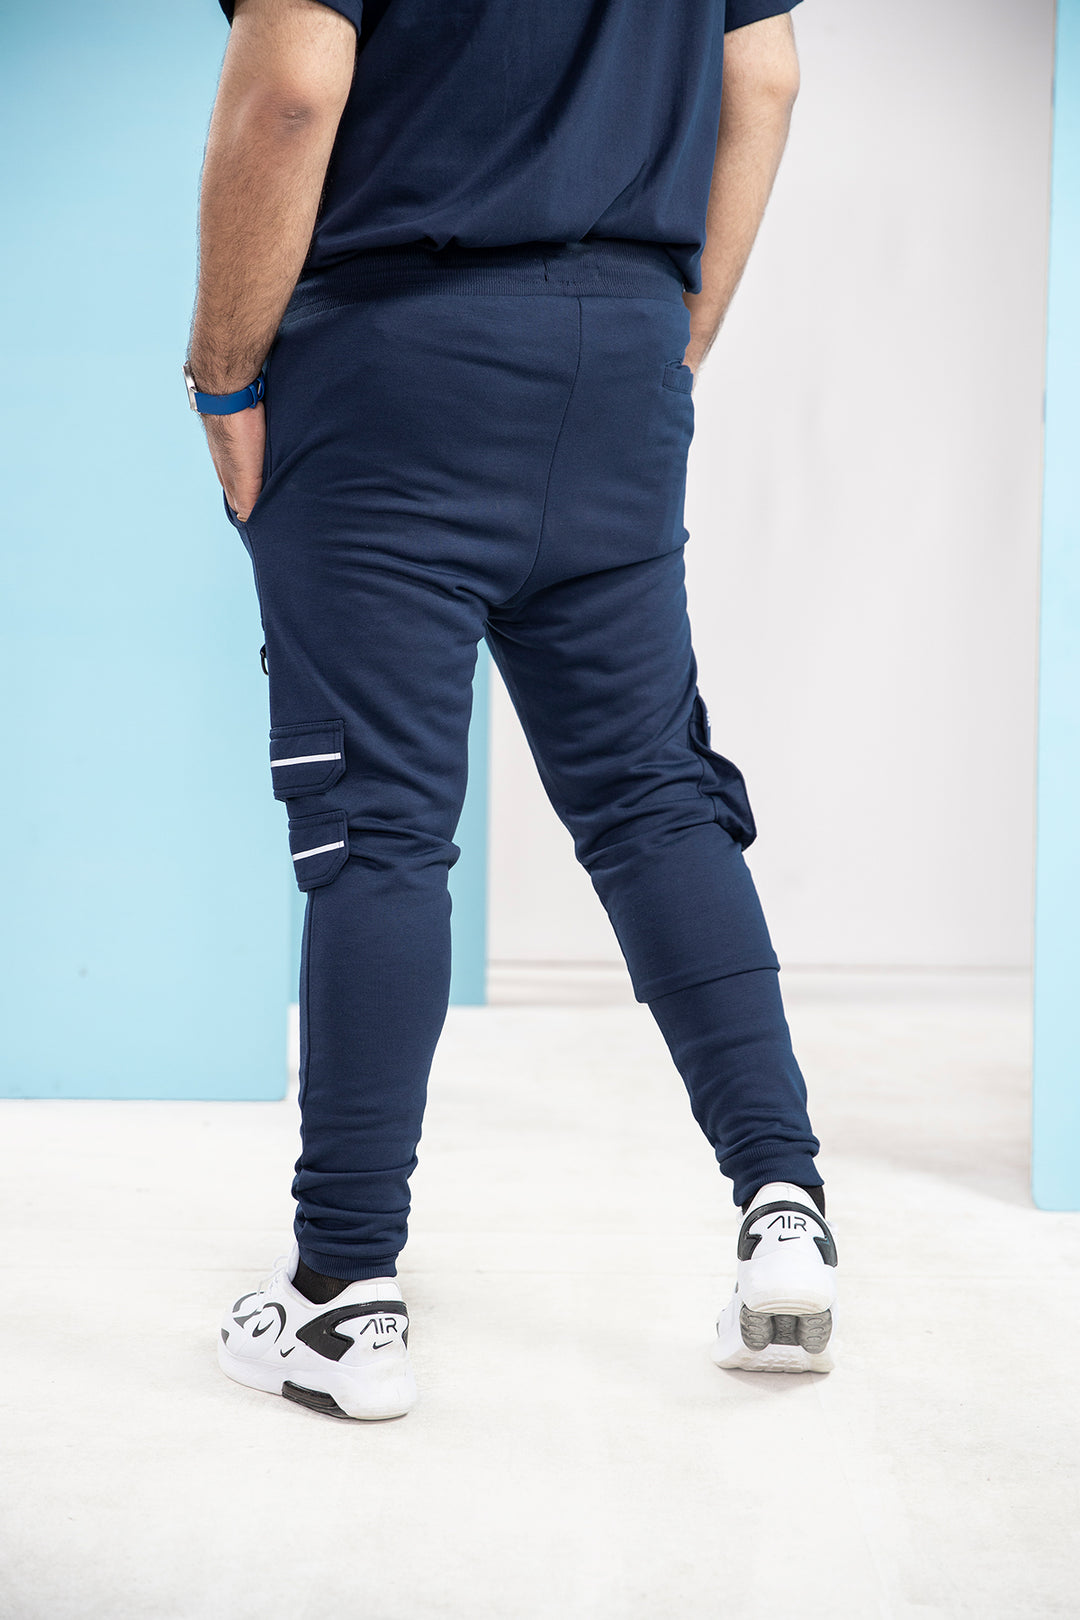 Blue Cargo Jog Pants (Plus Size) - S21 - MTR013P